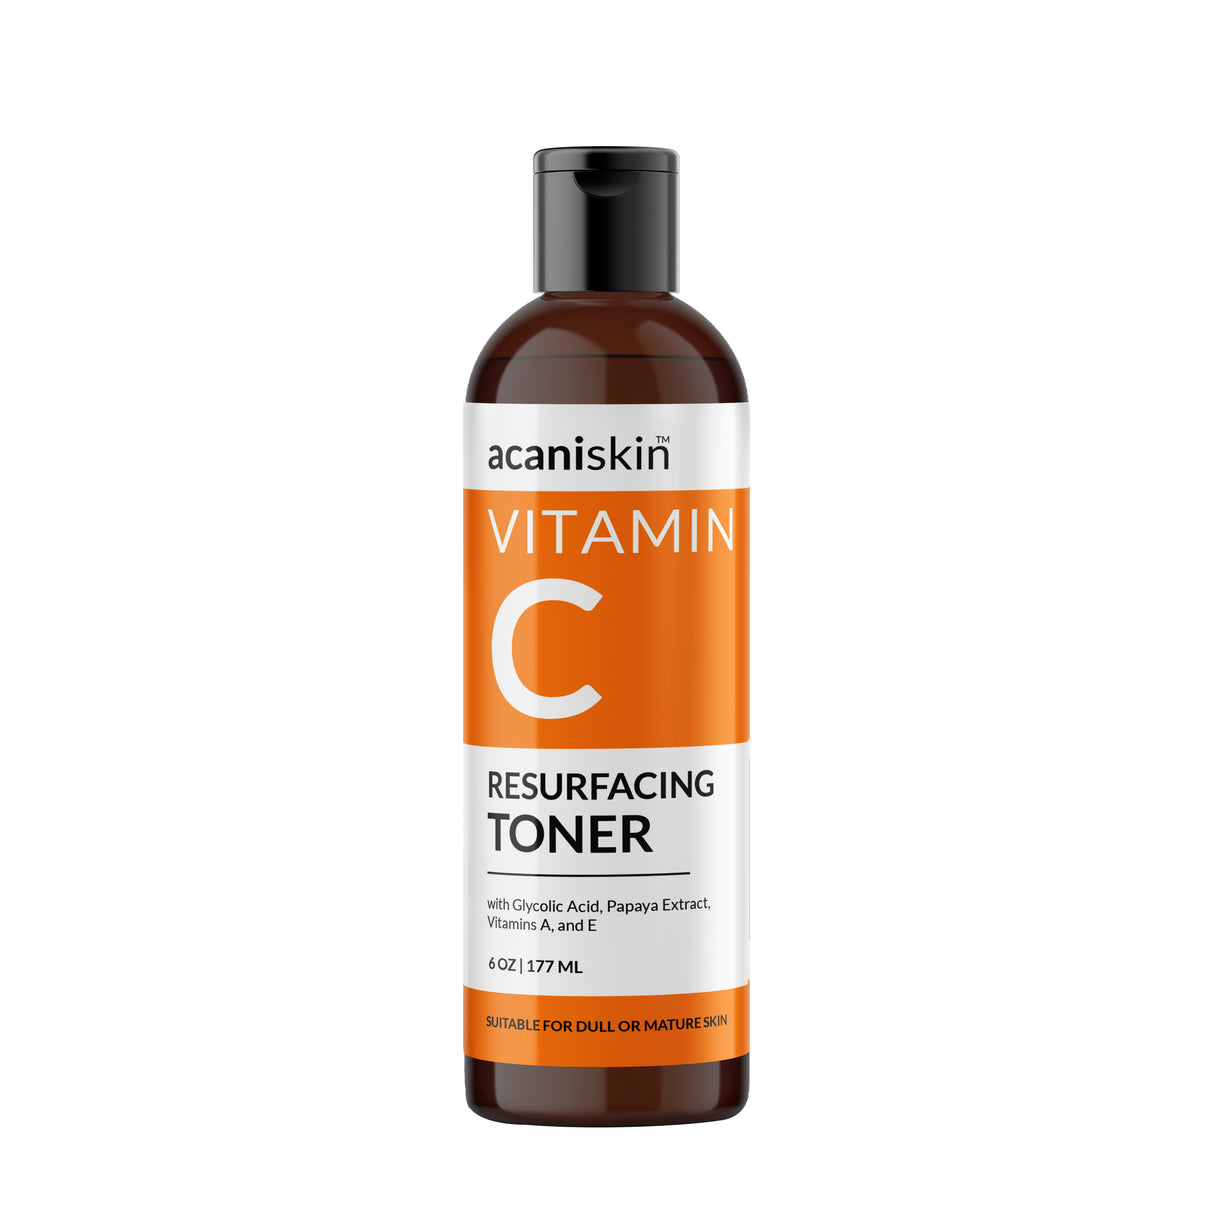 Acani Skin Vitamin C Resurfacing Toner 6oz